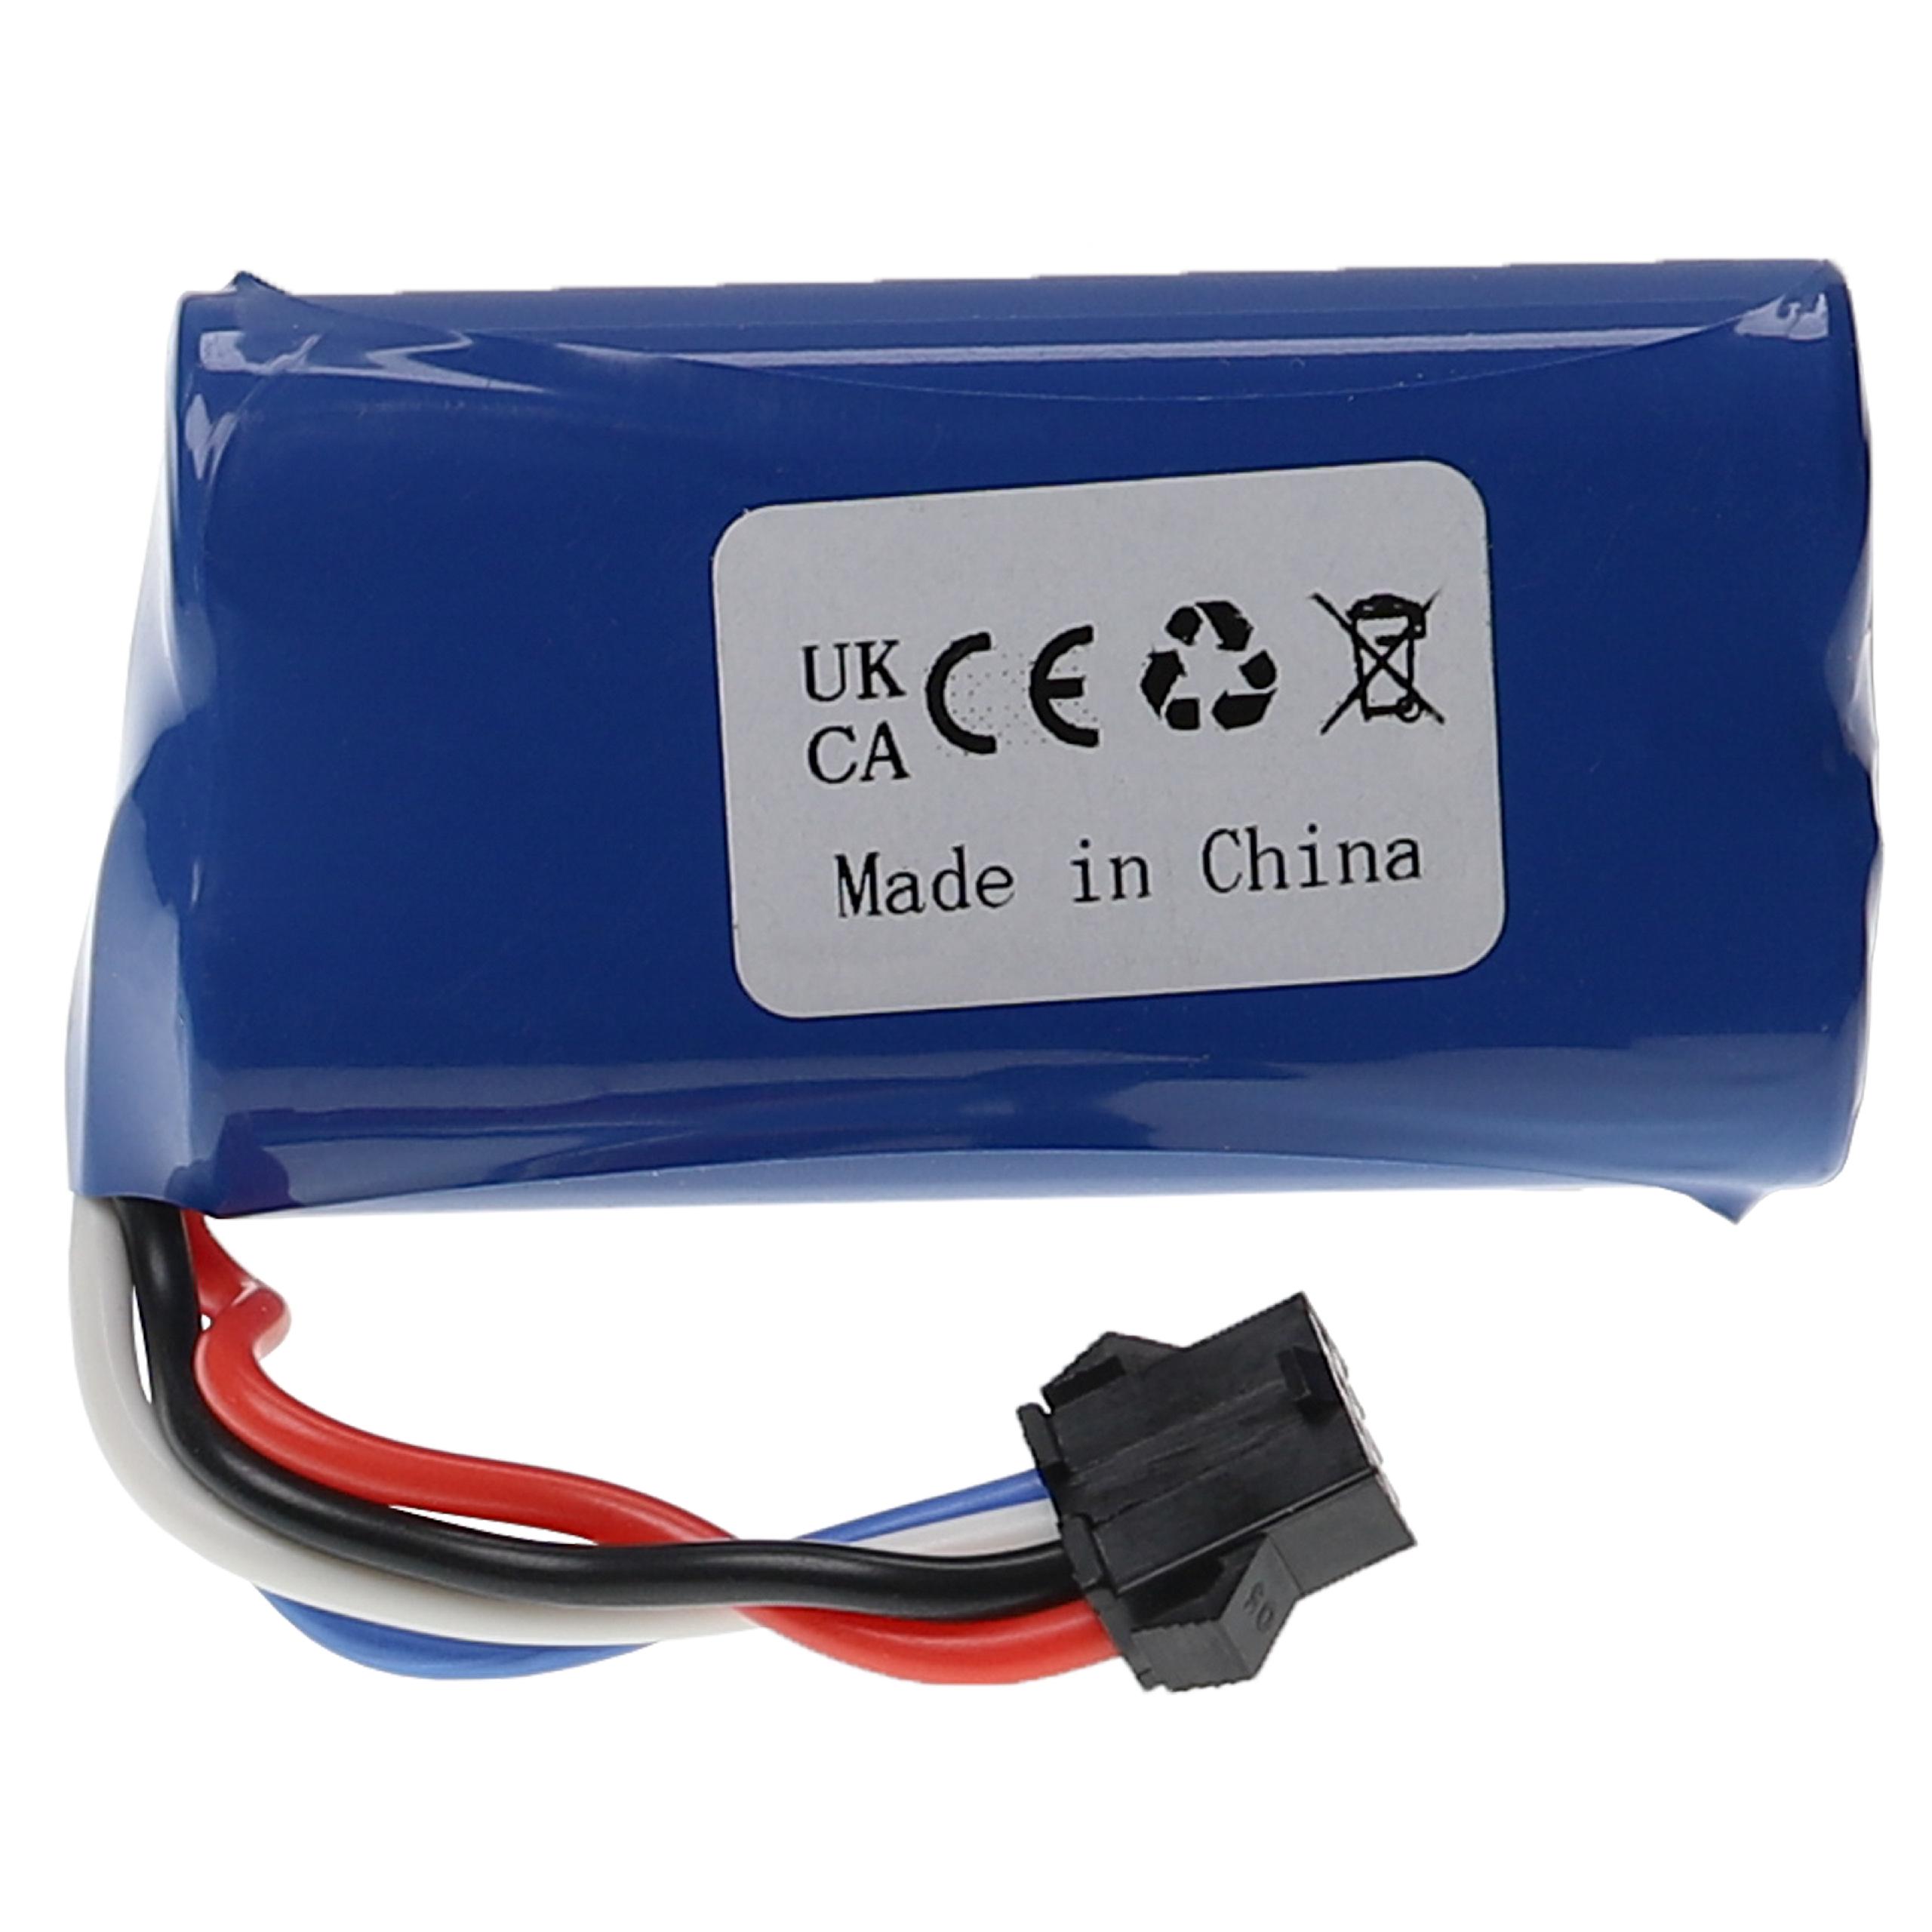 Model Making Device Battery for Huanqi 961, 962 / UDI 002, 902 - 1500mAh 7.4V Li-Ion, T-plug